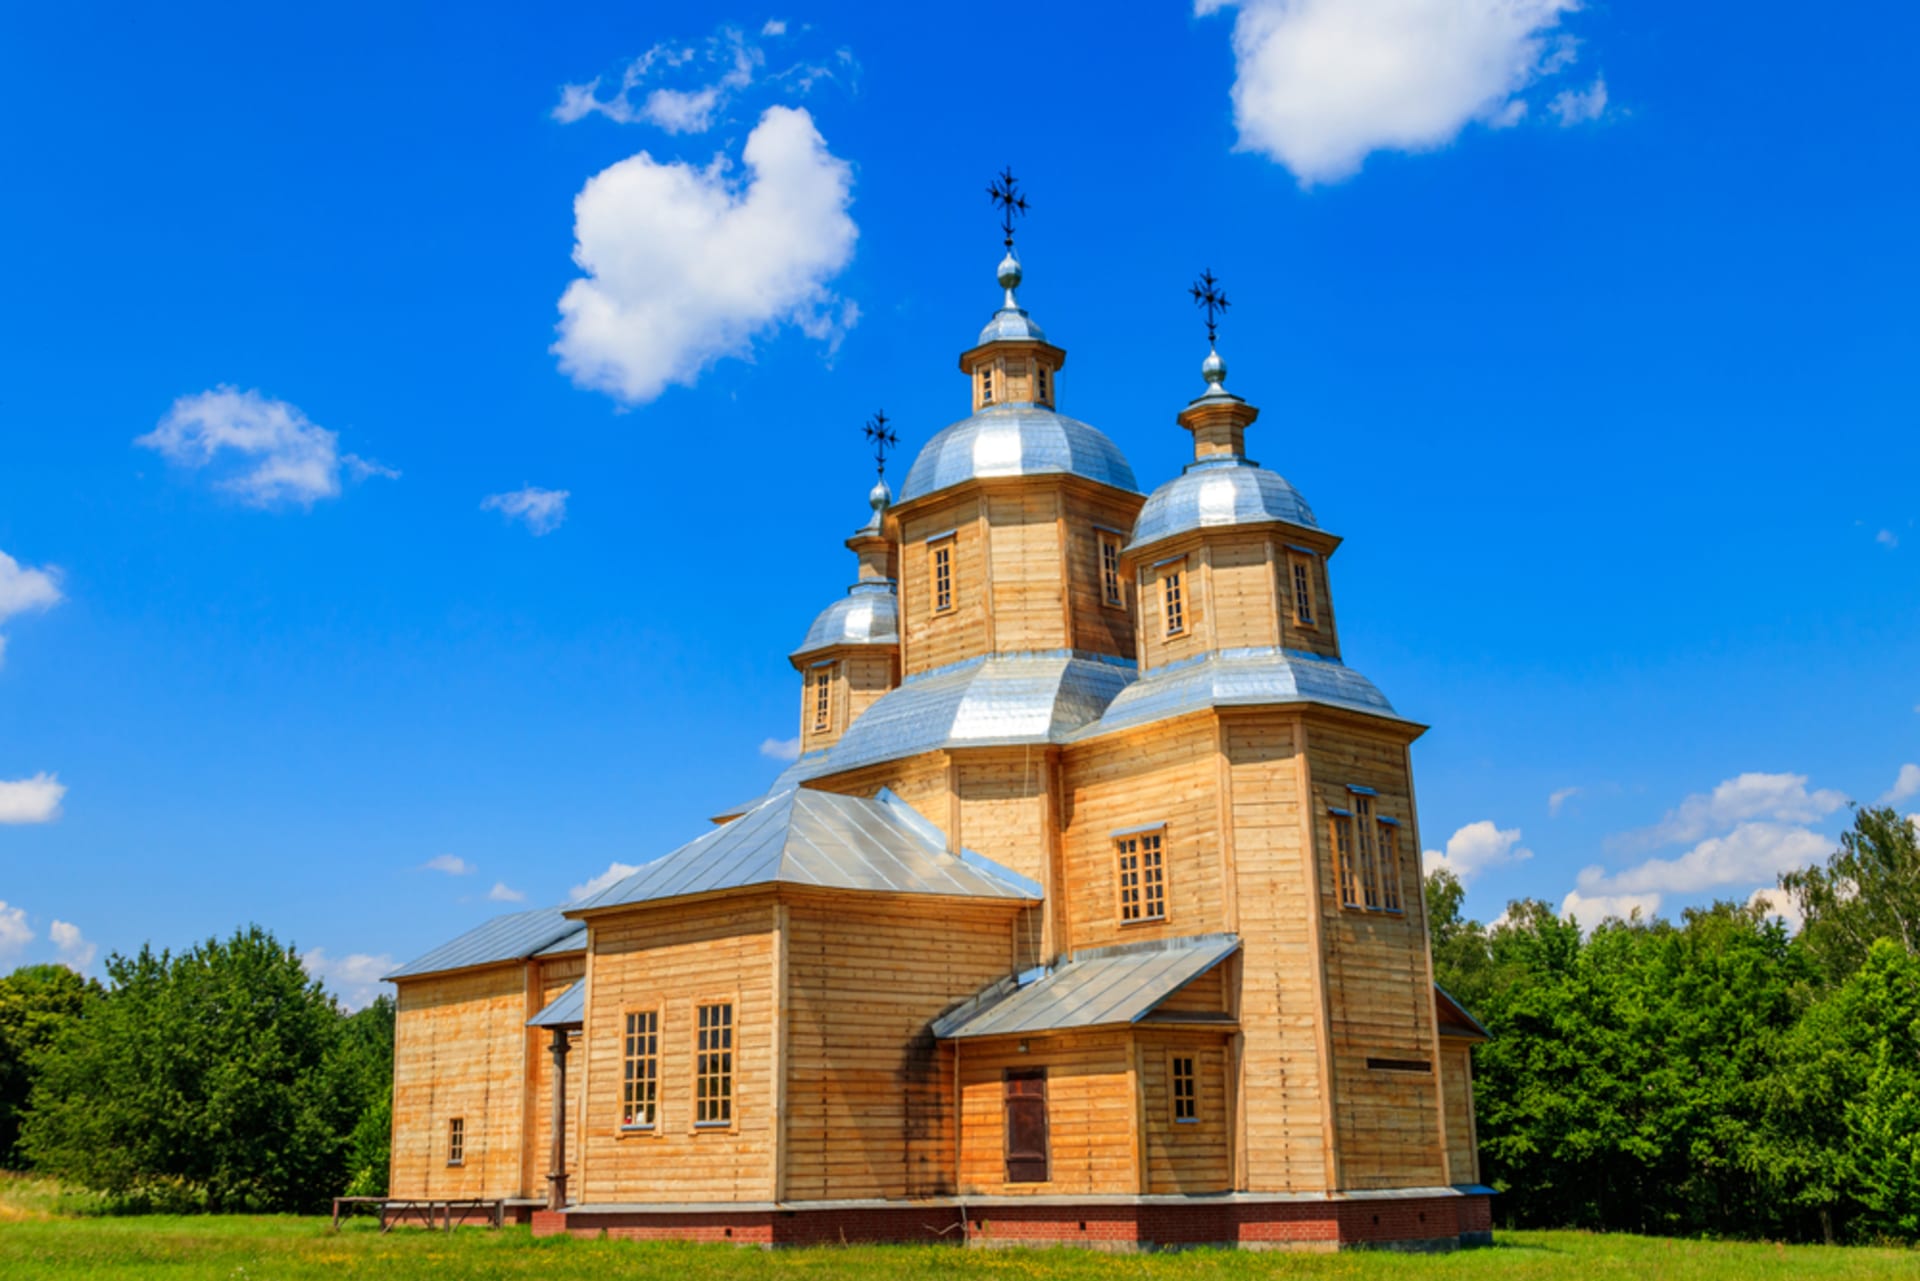 Starobylý zrekonstruovaný dřevěný kostel svatého Mikuláše ve vesnici Pyrohiv (Pirogovo) nedaleko Kyjeva